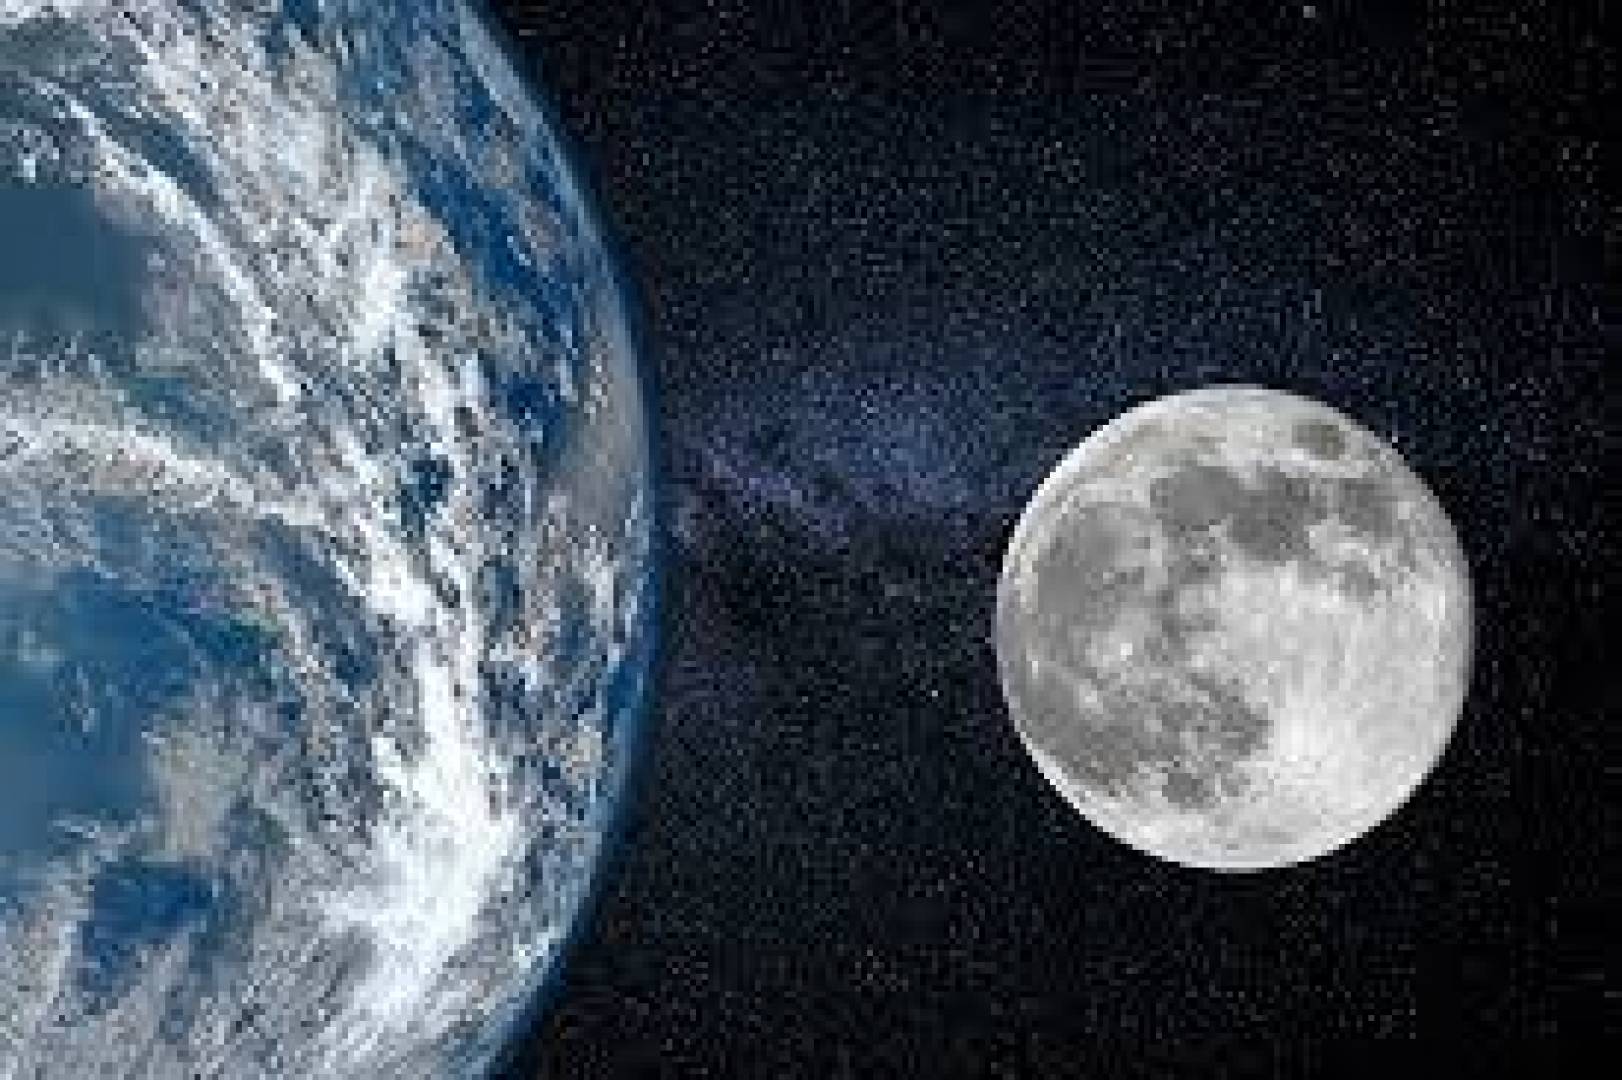 لأول مرة منذ ألف عام .. القمر يقترب من الأرض بشكل غير مسبوق